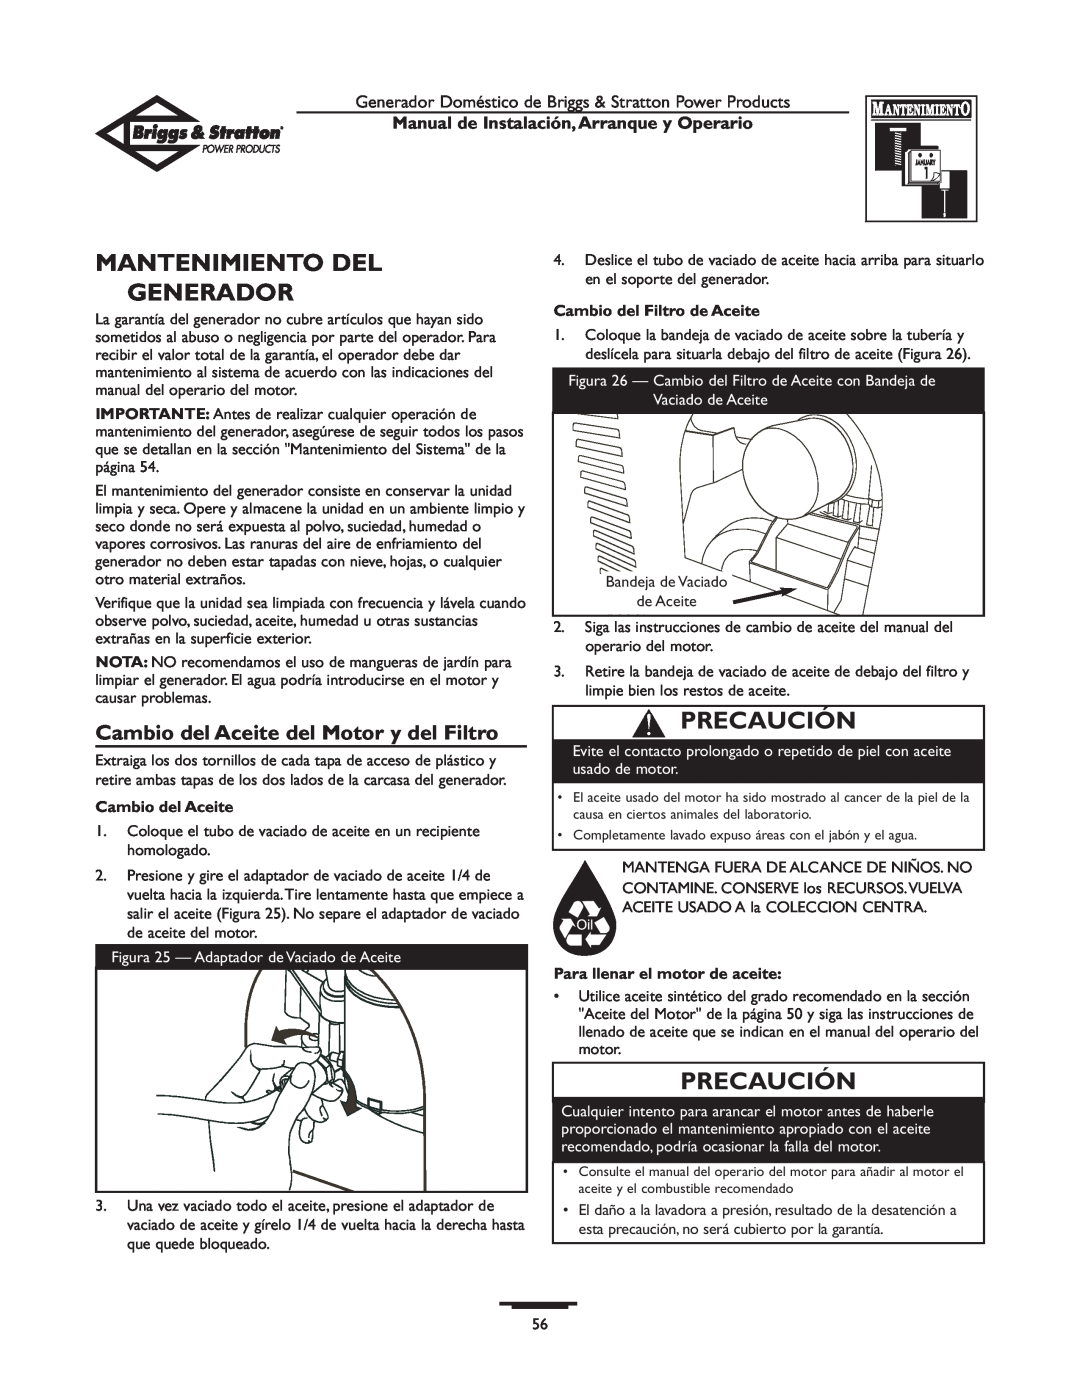 Briggs & Stratton 01897-0 manual Mantenimiento Del Generador, Cambio del Aceite del Motor y del Filtro, Precaución 